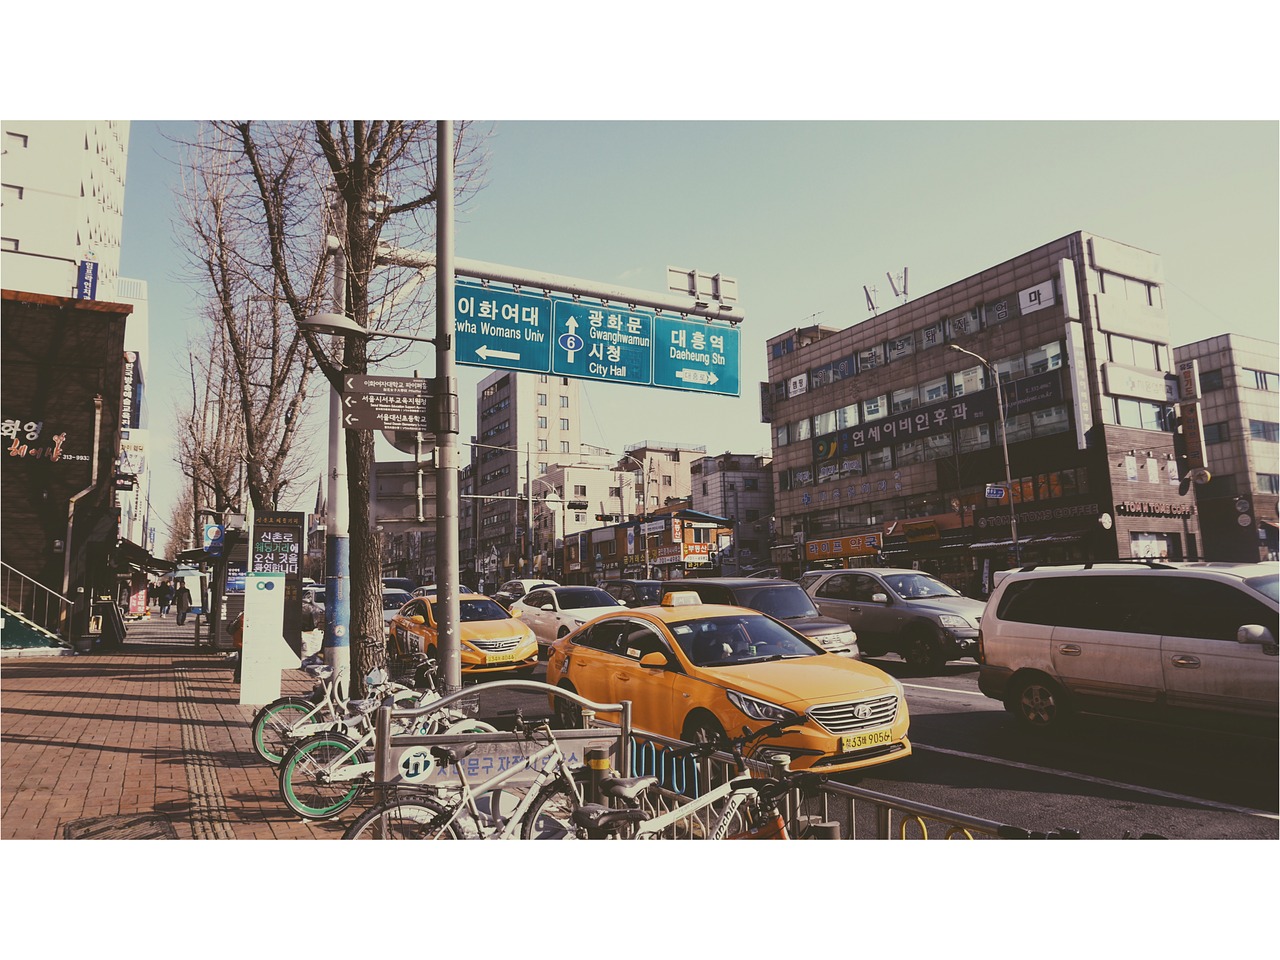 seoul retro style street view free photo